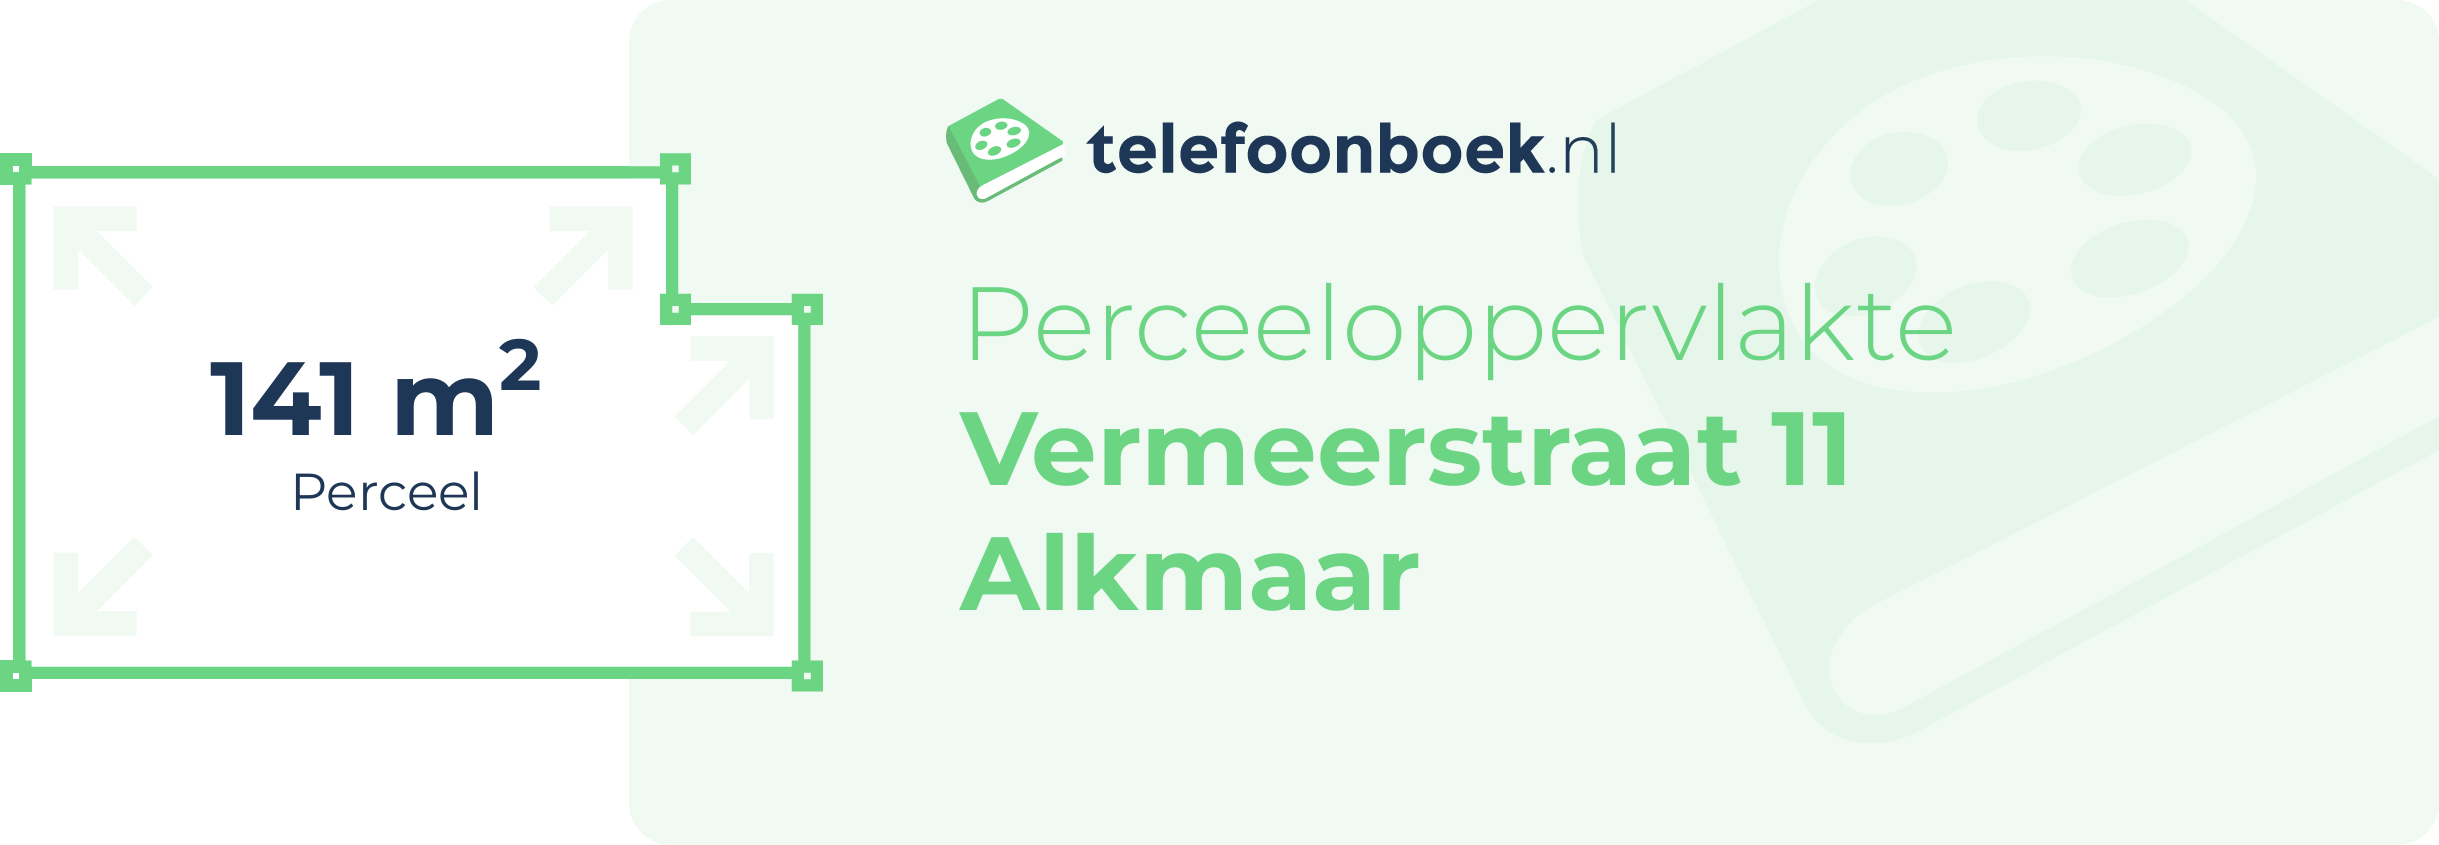 Perceeloppervlakte Vermeerstraat 11 Alkmaar